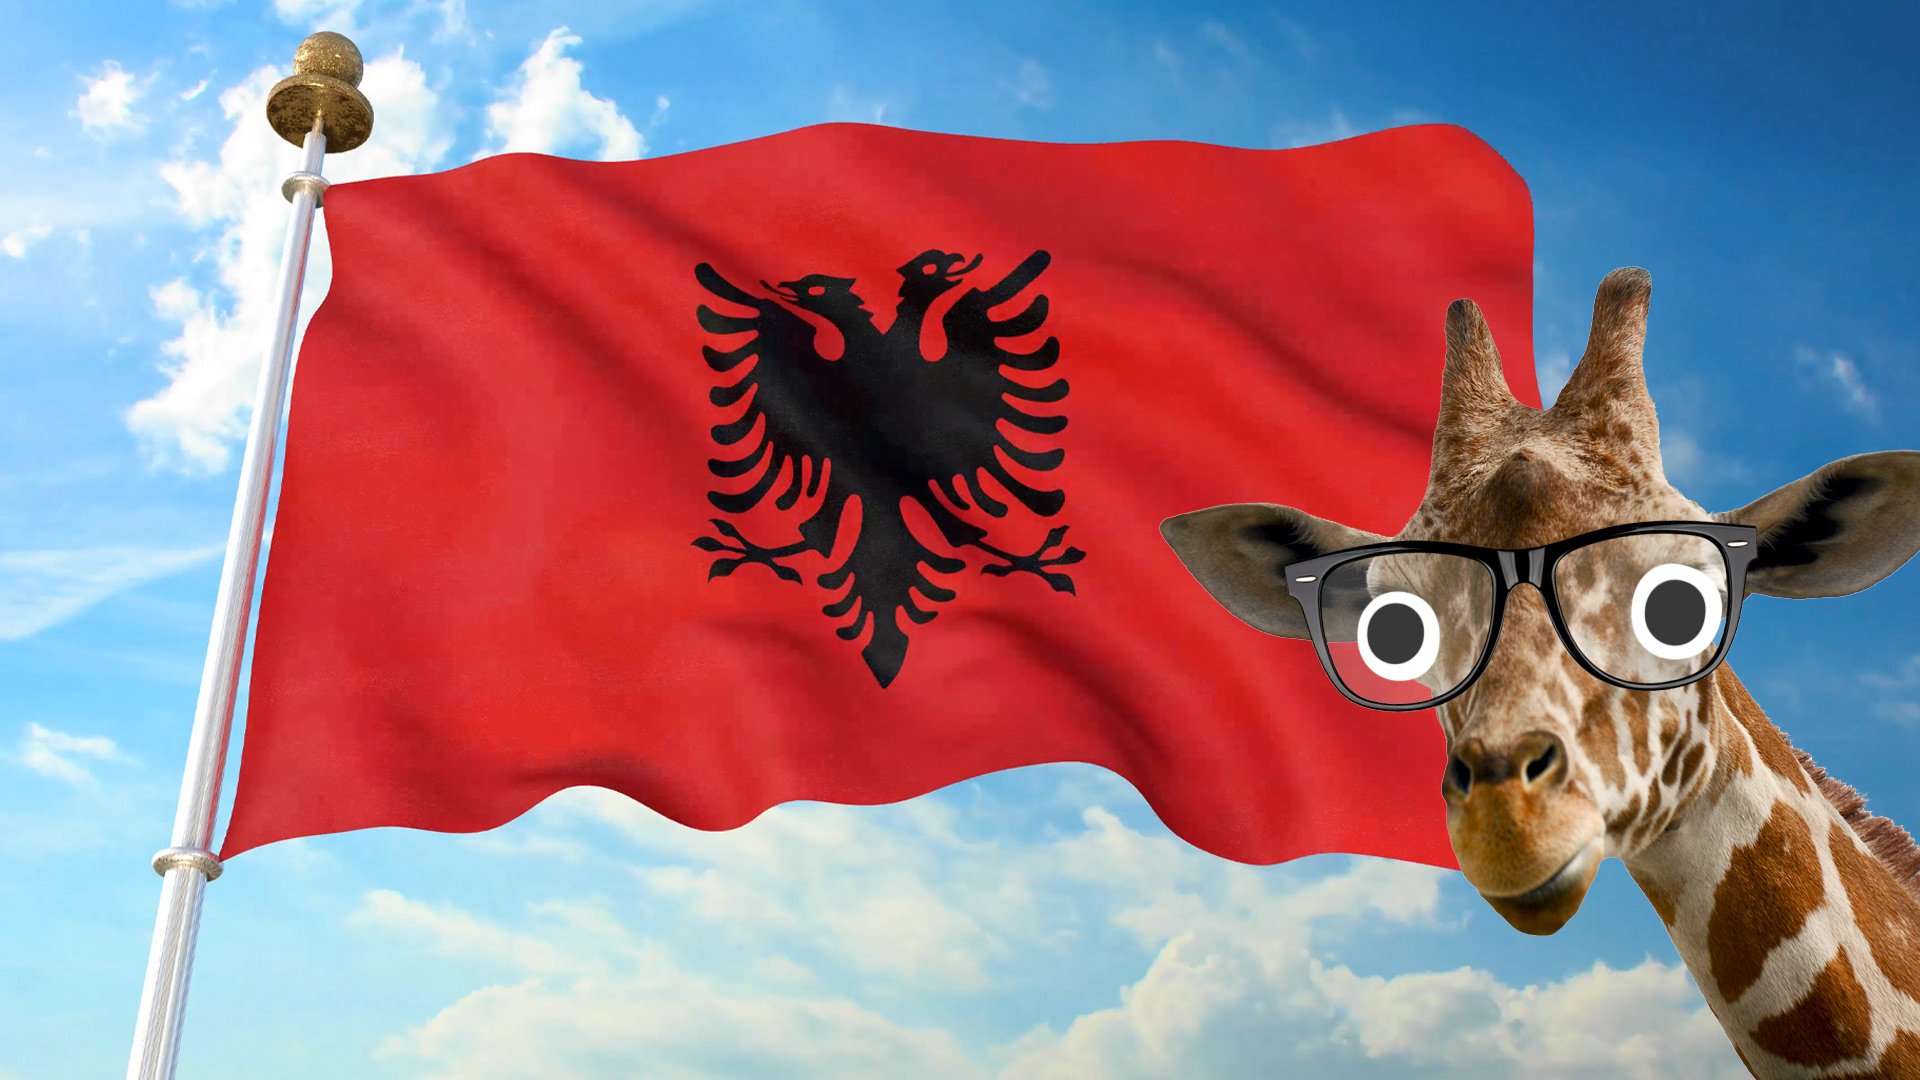 Albanian flag with a giraffe